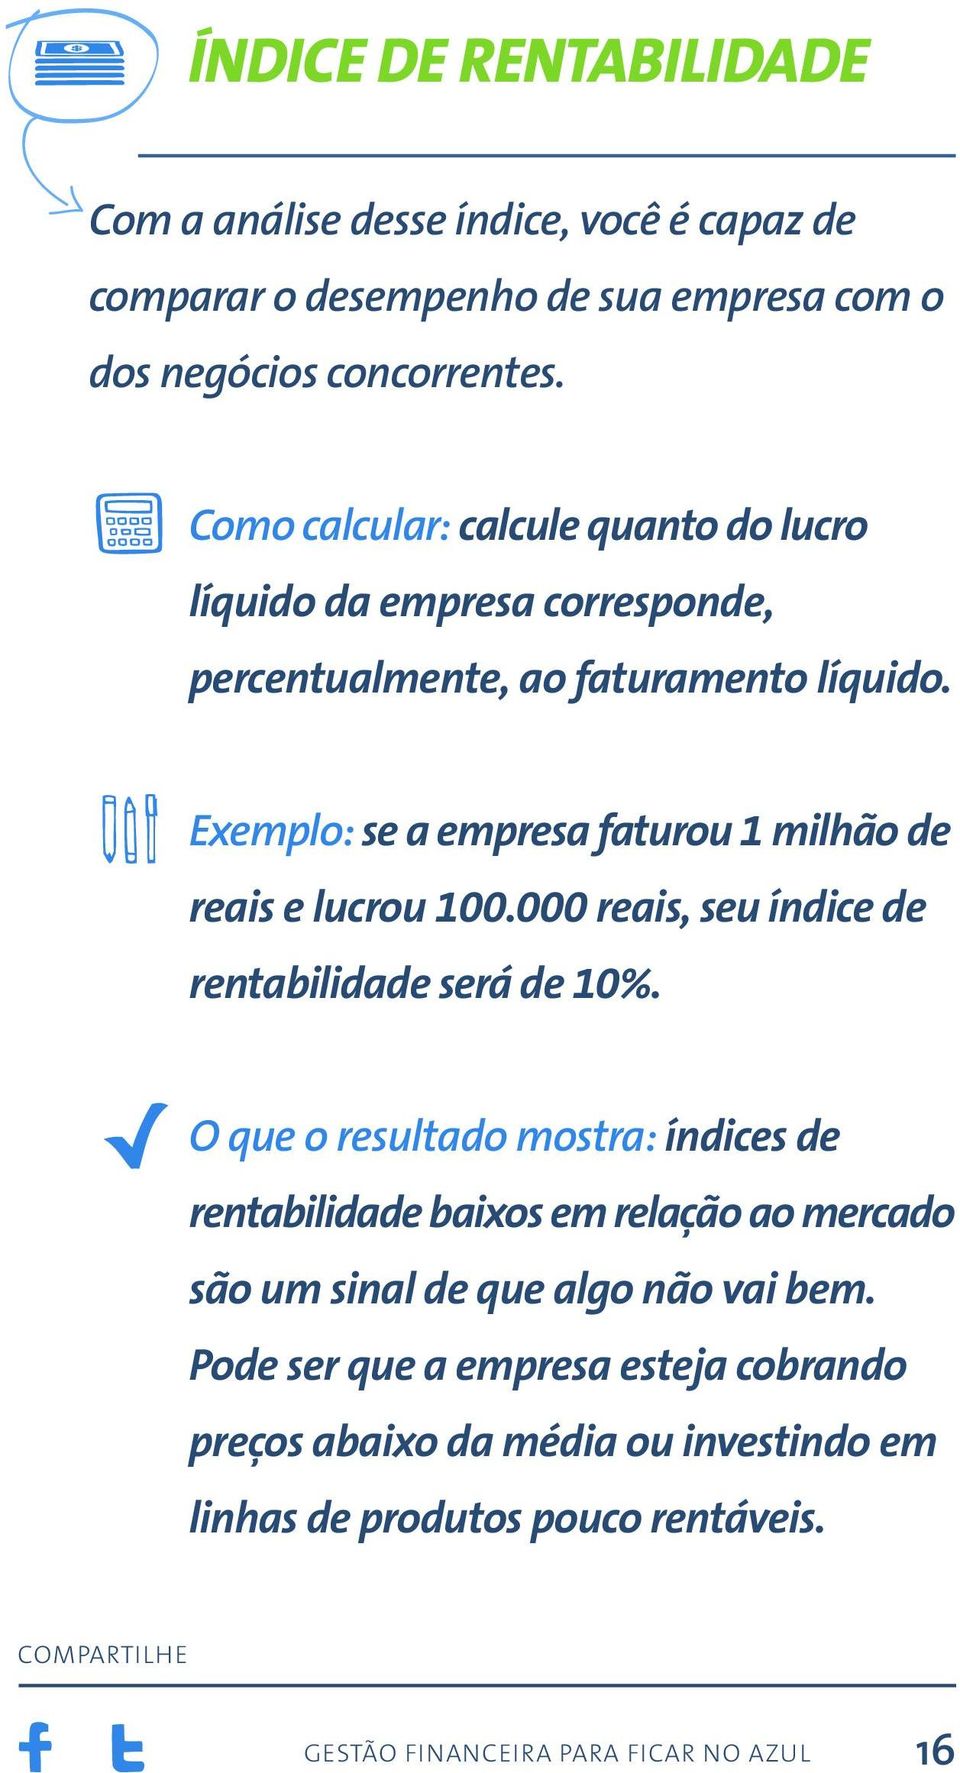 Exemplo: se a empresa faturou 1 milhão de reais e lucrou 100.000 reais, seu índice de rentabilidade será de 10%.